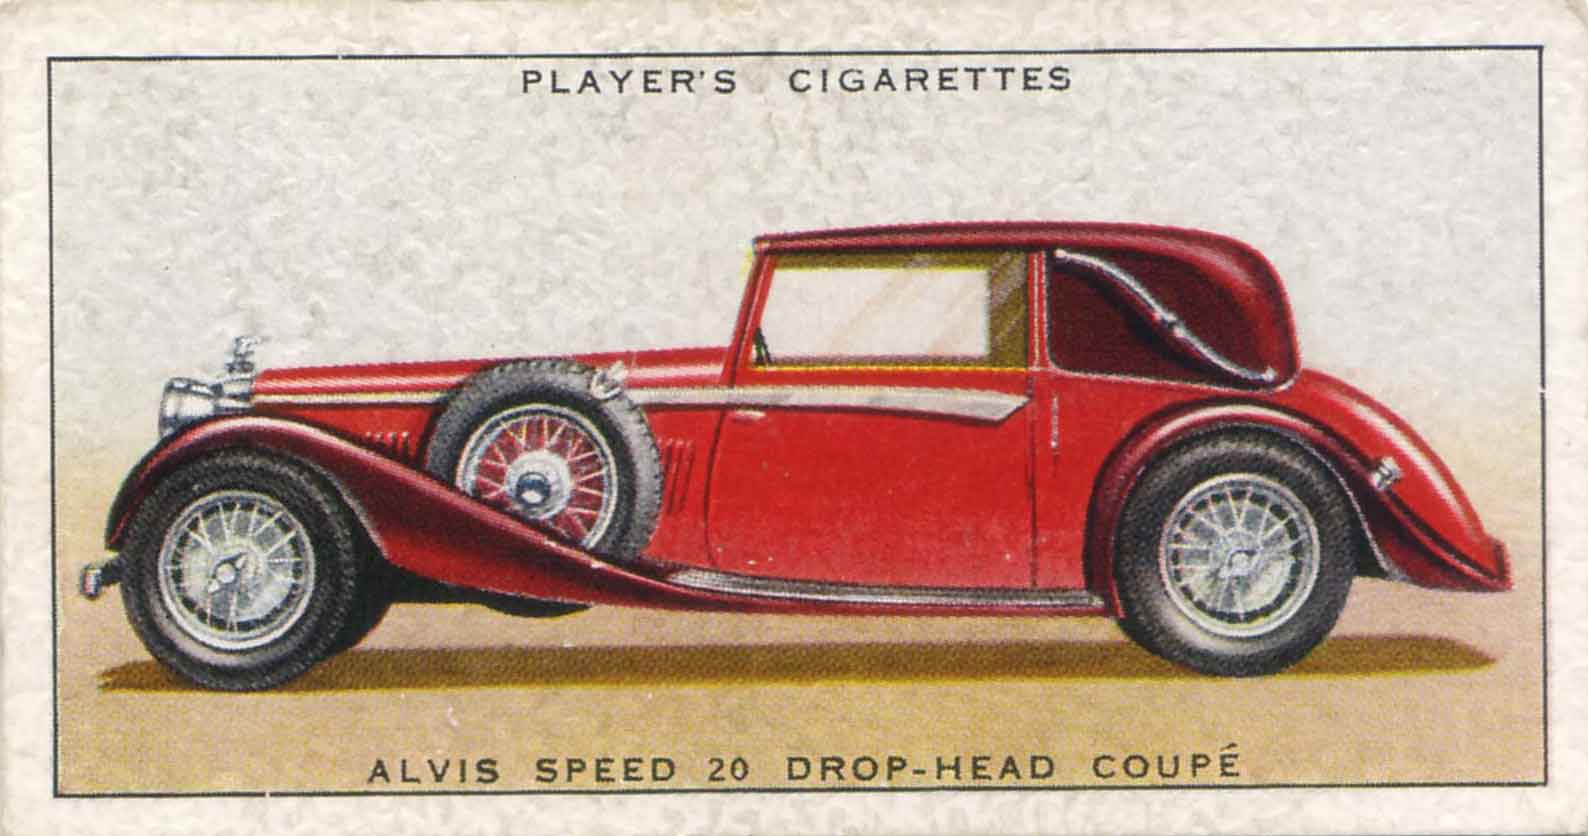 Alvis Speed 20 Drop-Head Coupé. 1937 cigarette card.